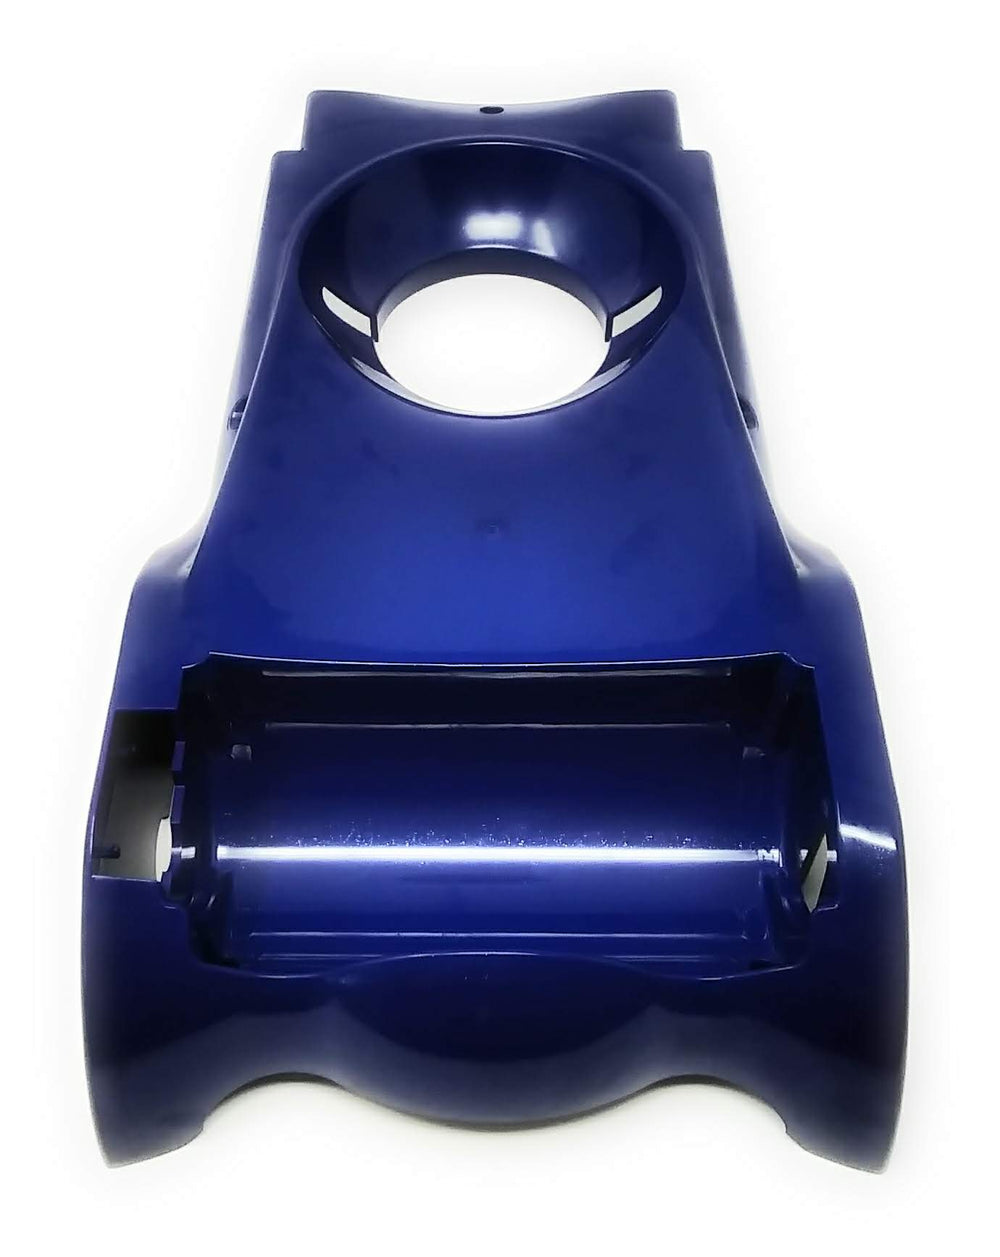 Bottom View of Pentair Racer Pressure Side Cleaner Bottom Cover Kit - ePoolSupply